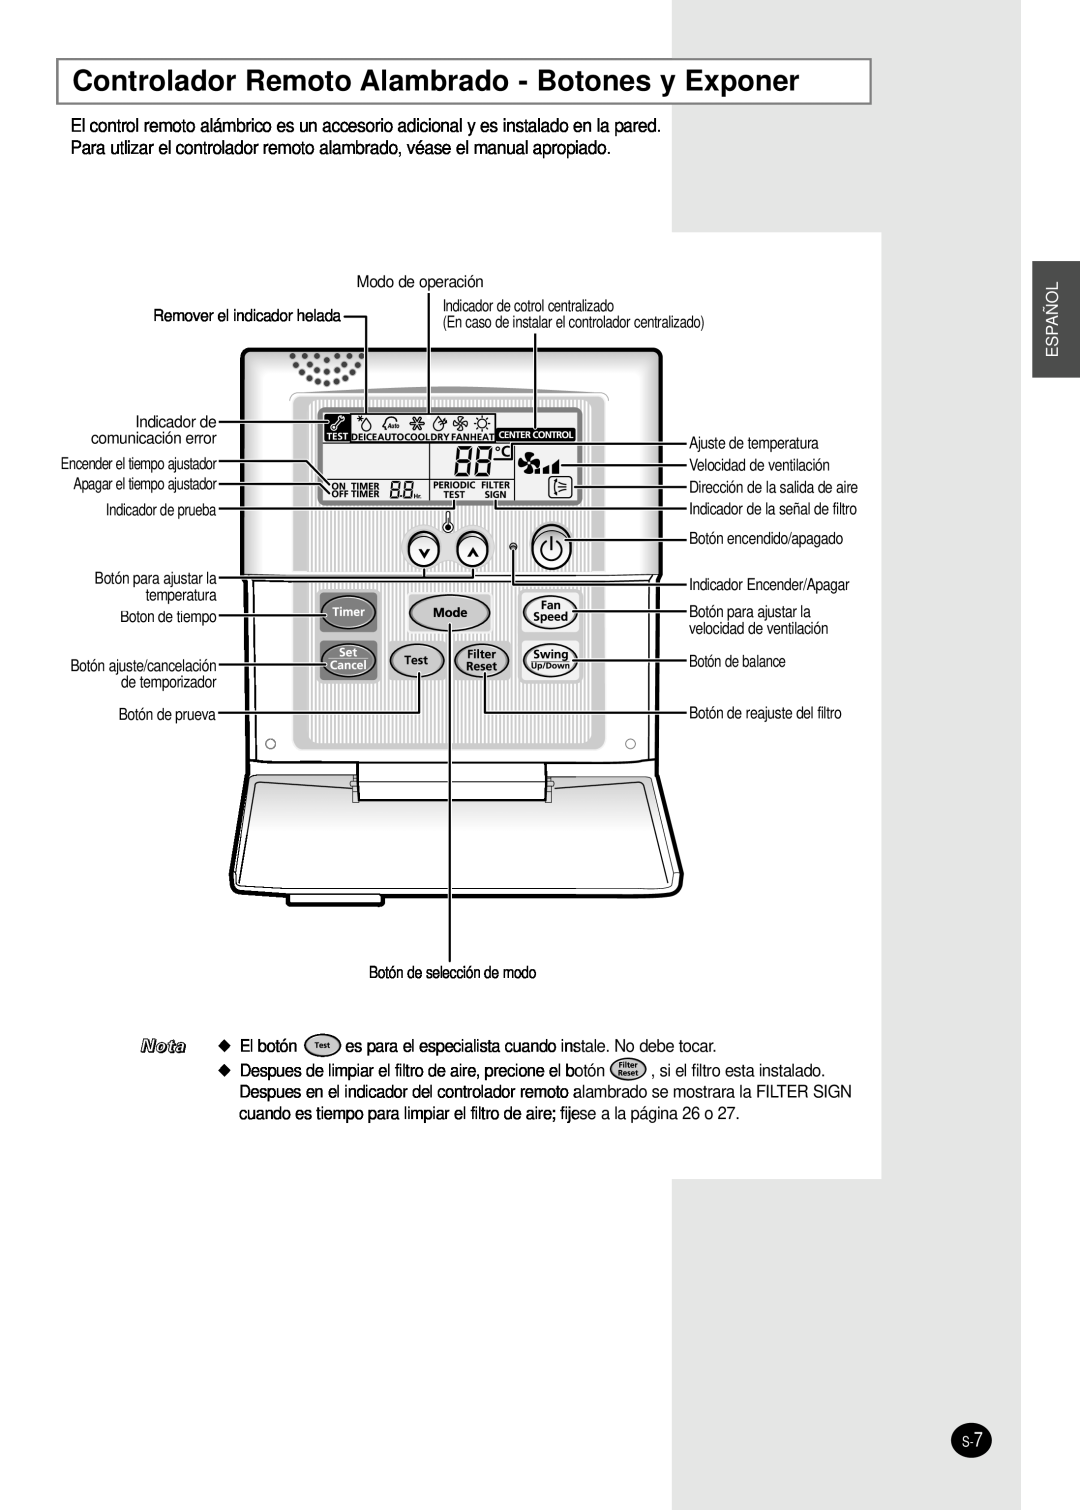 Samsung MH18VP2-09 Controlador Remoto Alambrado - Botones y Exponer, Indicador de cotrol centralizado, temperatura 